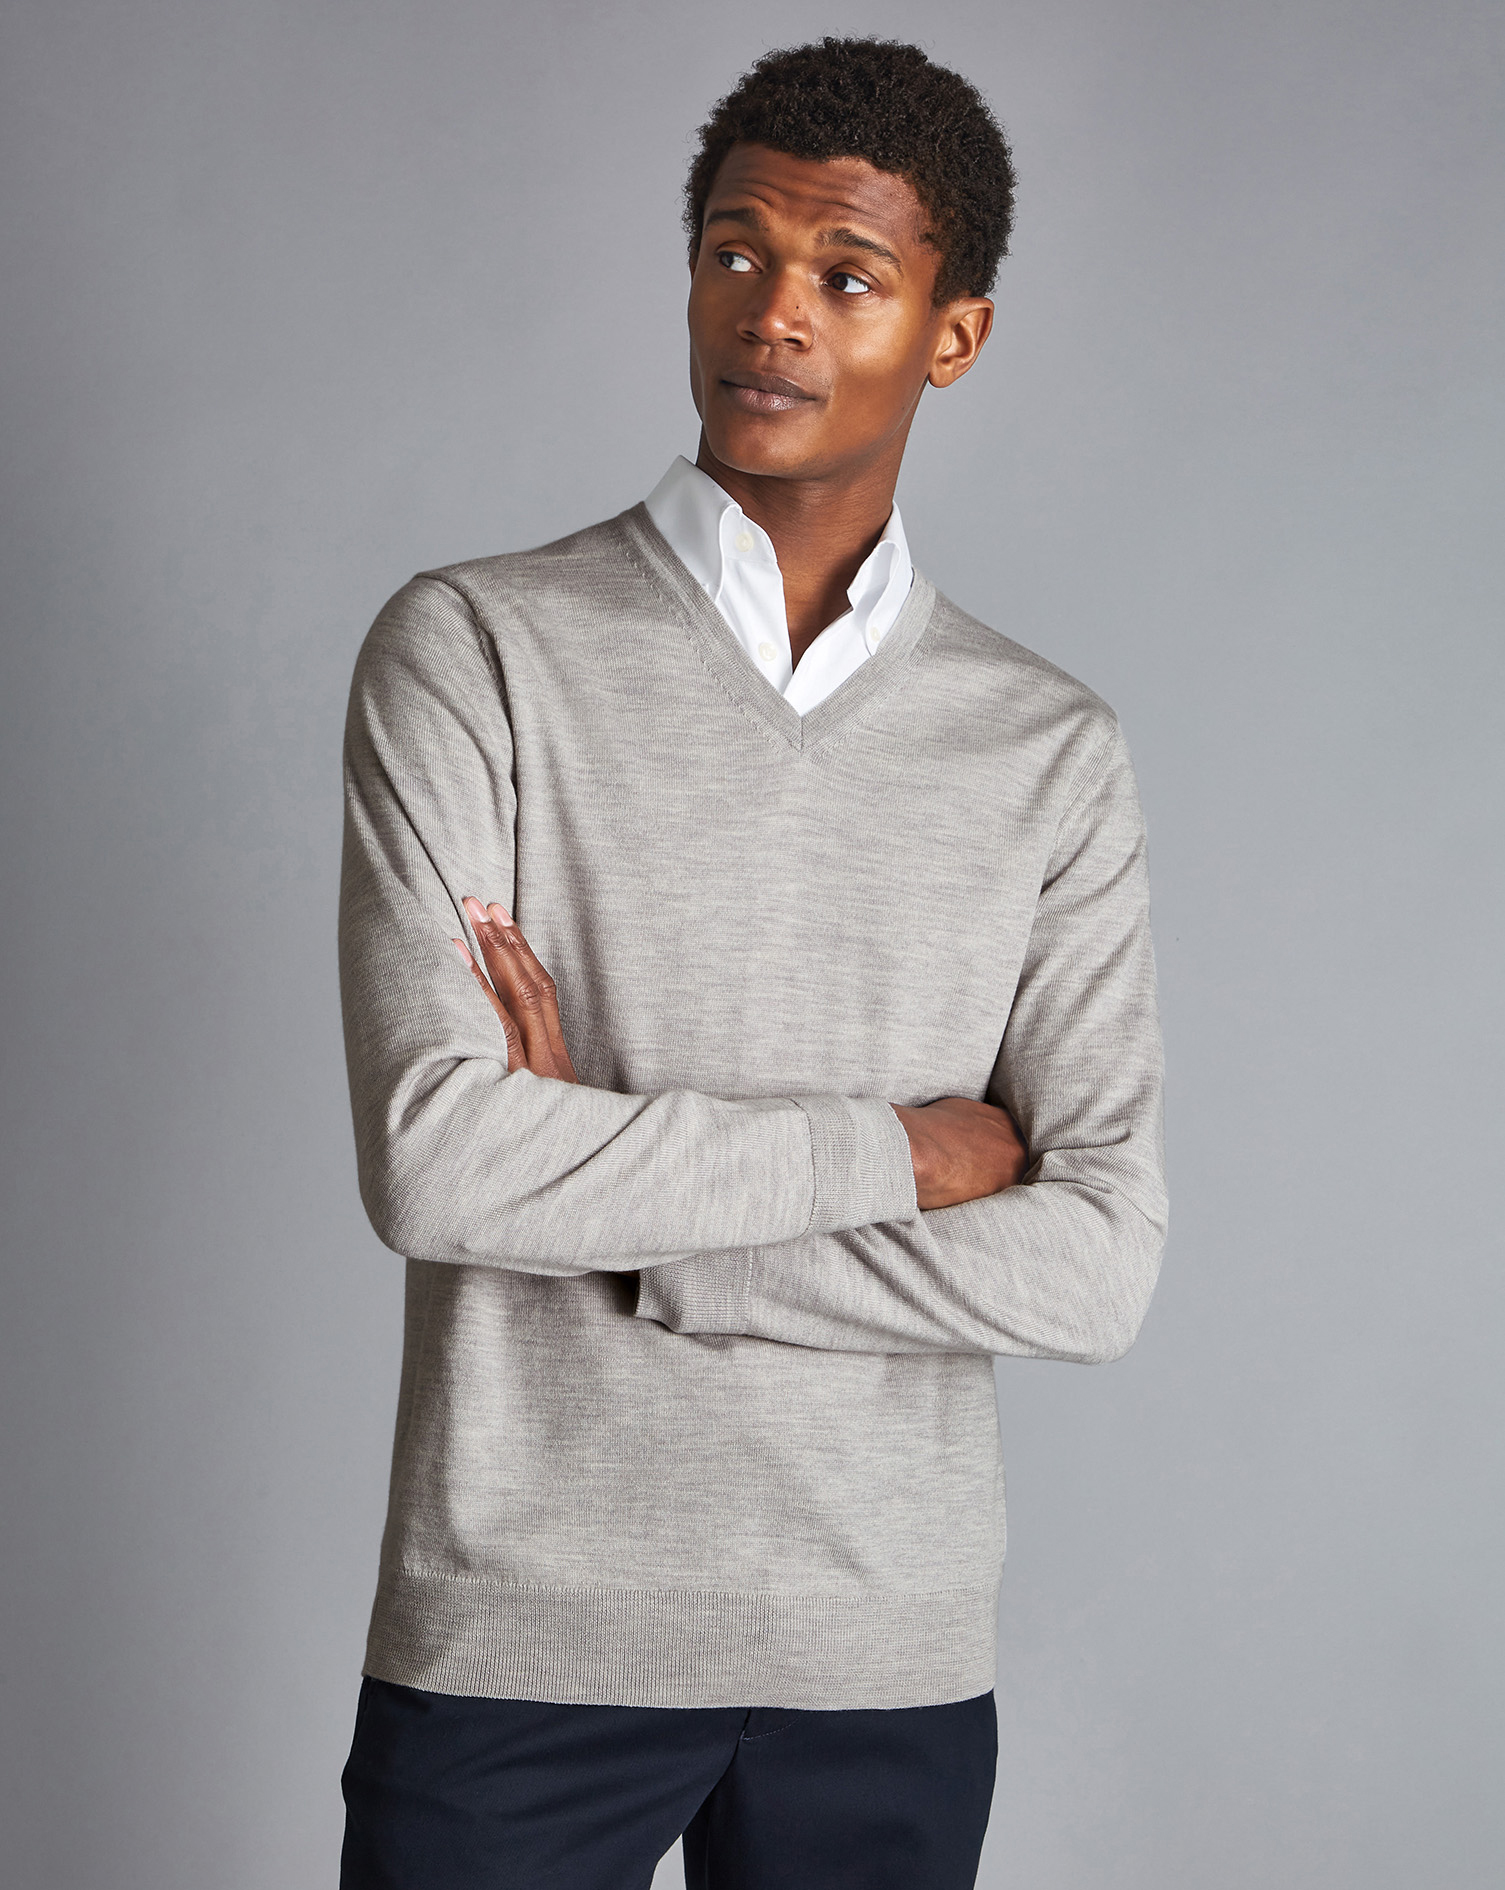 Men's Charles Tyrwhitt V-Neck Sweater - Silver Grey Size Small Merino
